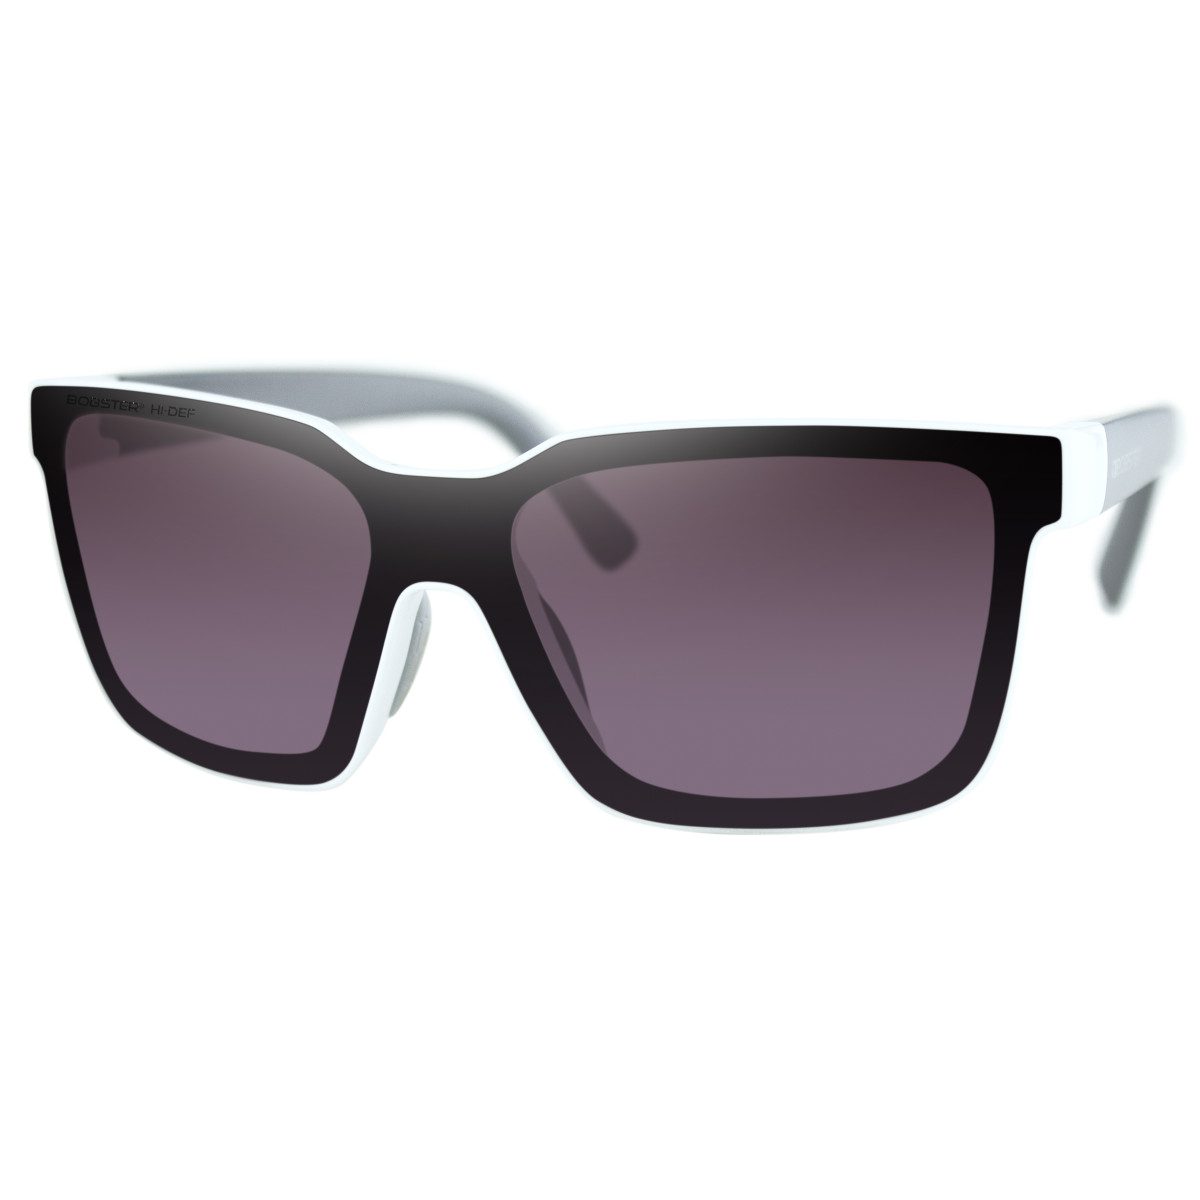 Bobster Boost Sunglasses - Matte Black